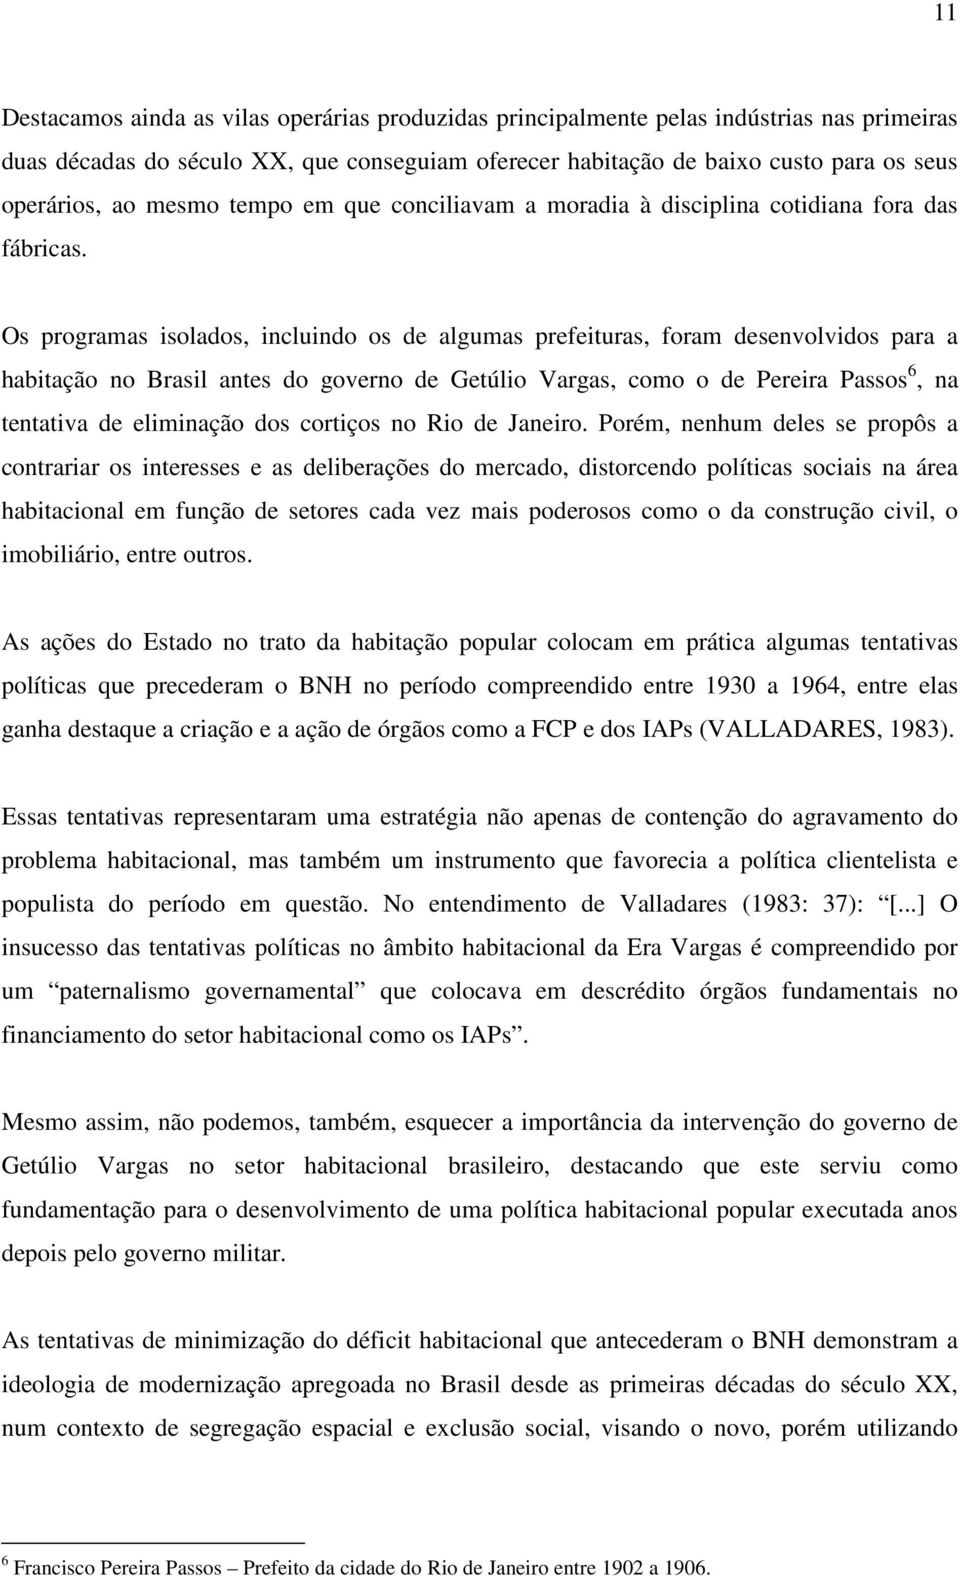 Os programas isolados, incluindo os de algumas prefeituras, foram desenvolvidos para a habitação no Brasil antes do governo de Getúlio Vargas, como o de Pereira Passos 6, na tentativa de eliminação